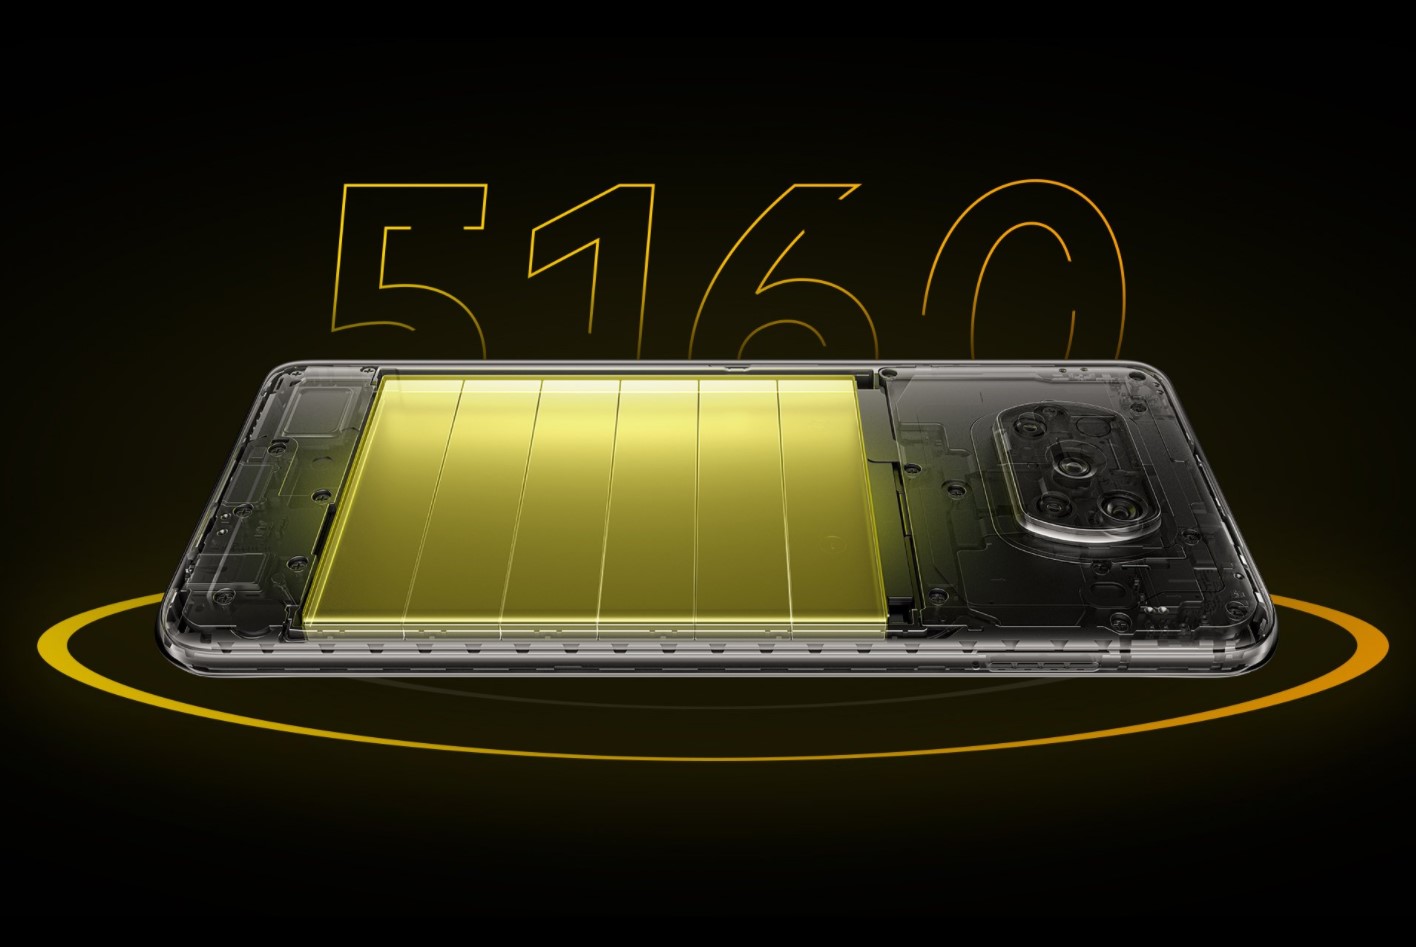 Điện thoại POCO X3 Pro 8GB/256GB - Chip Snapdragon 860 (7nm) | Màn hình IPS 6.67